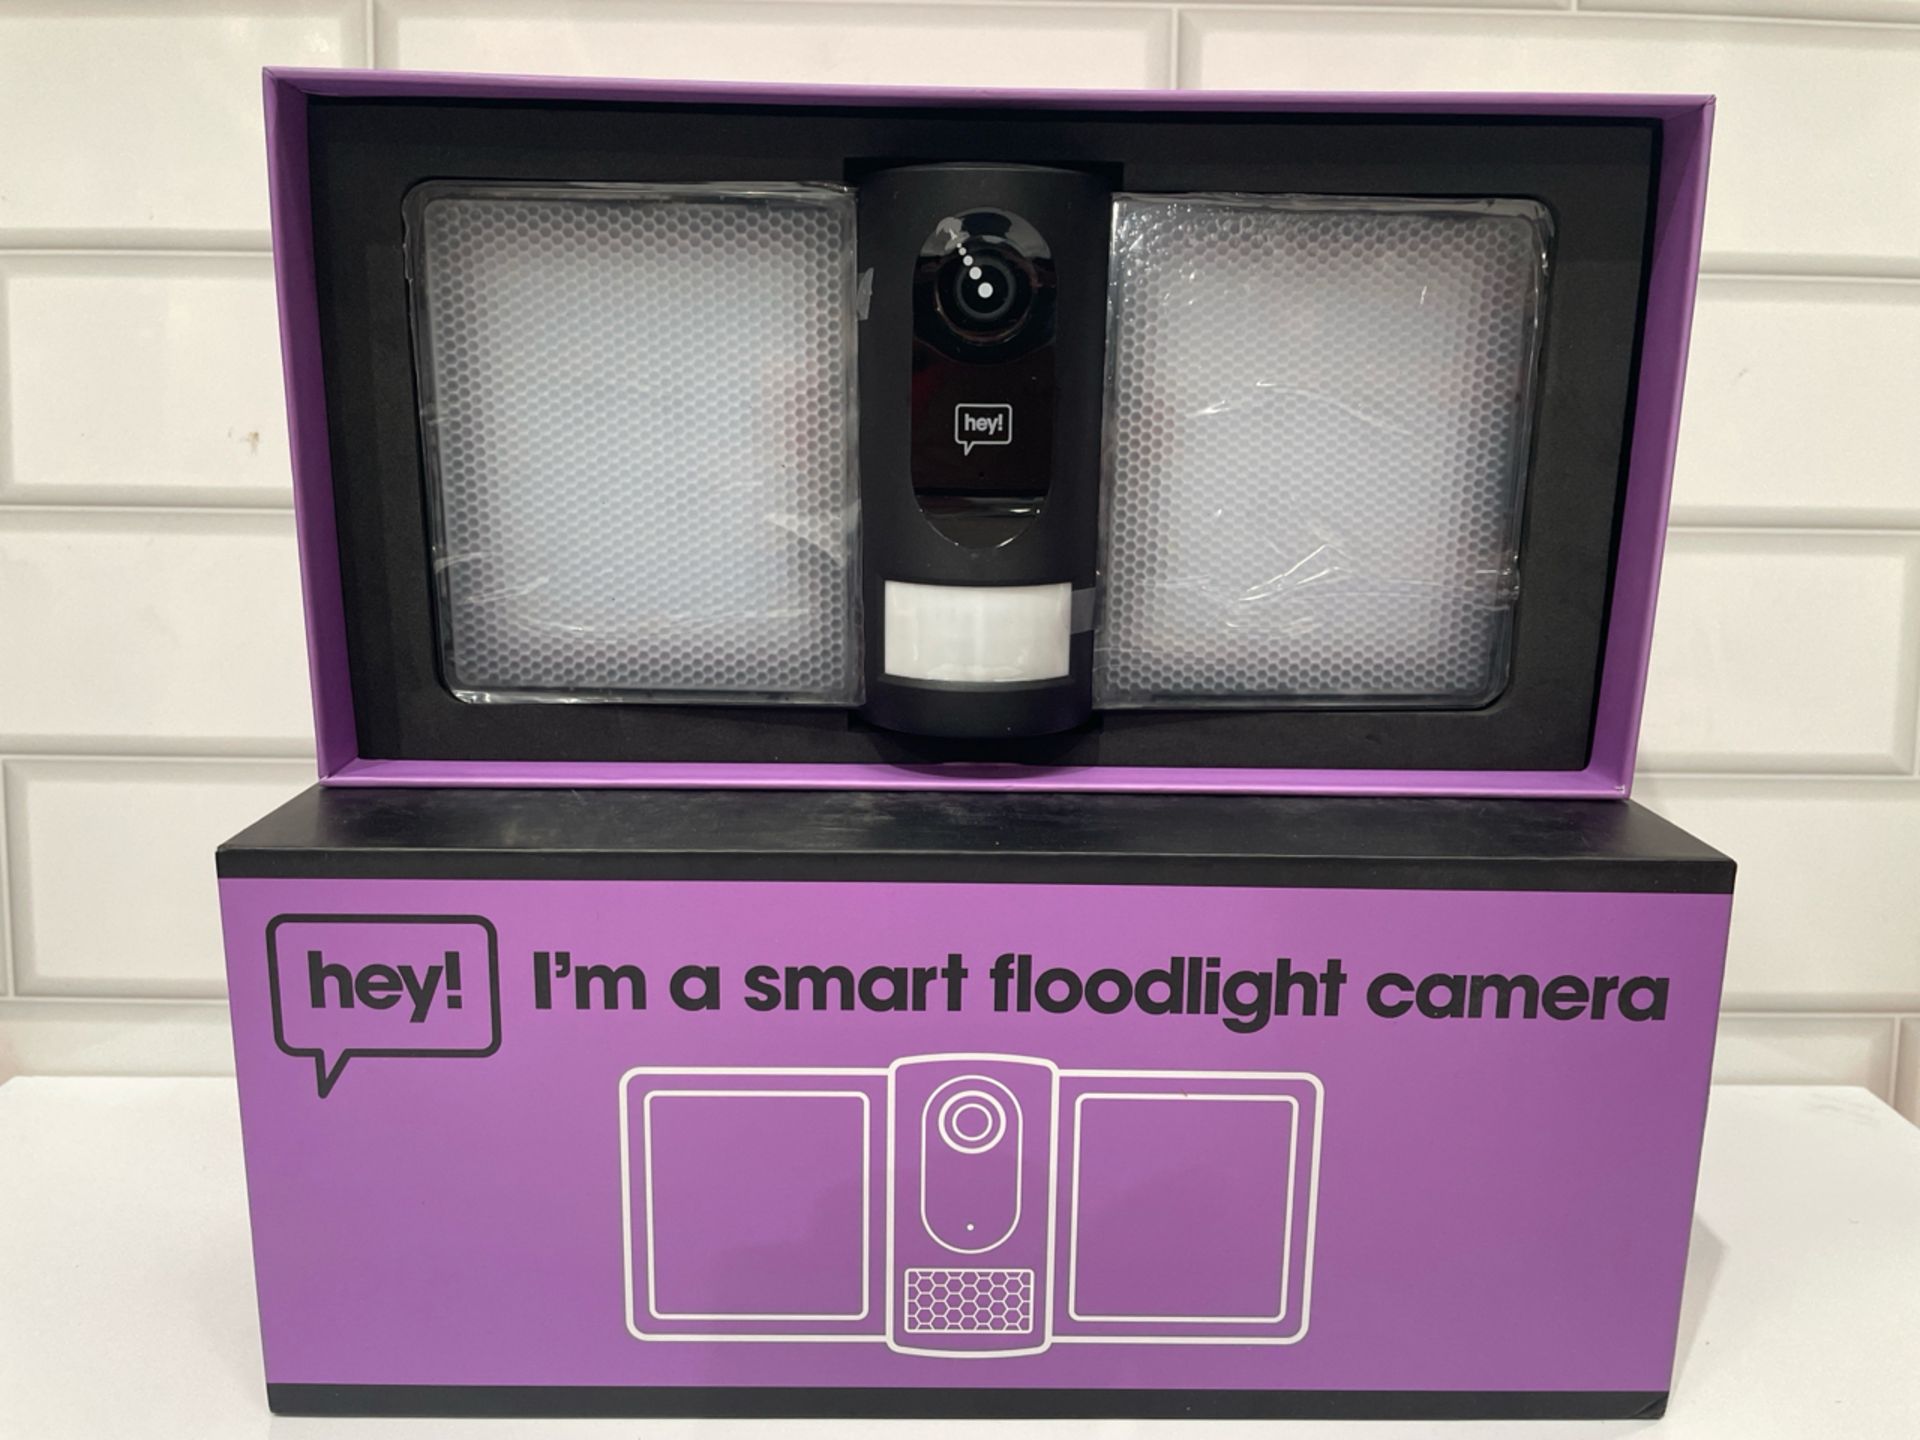 Hey! Smart Foodlight Camera - Image 2 of 3